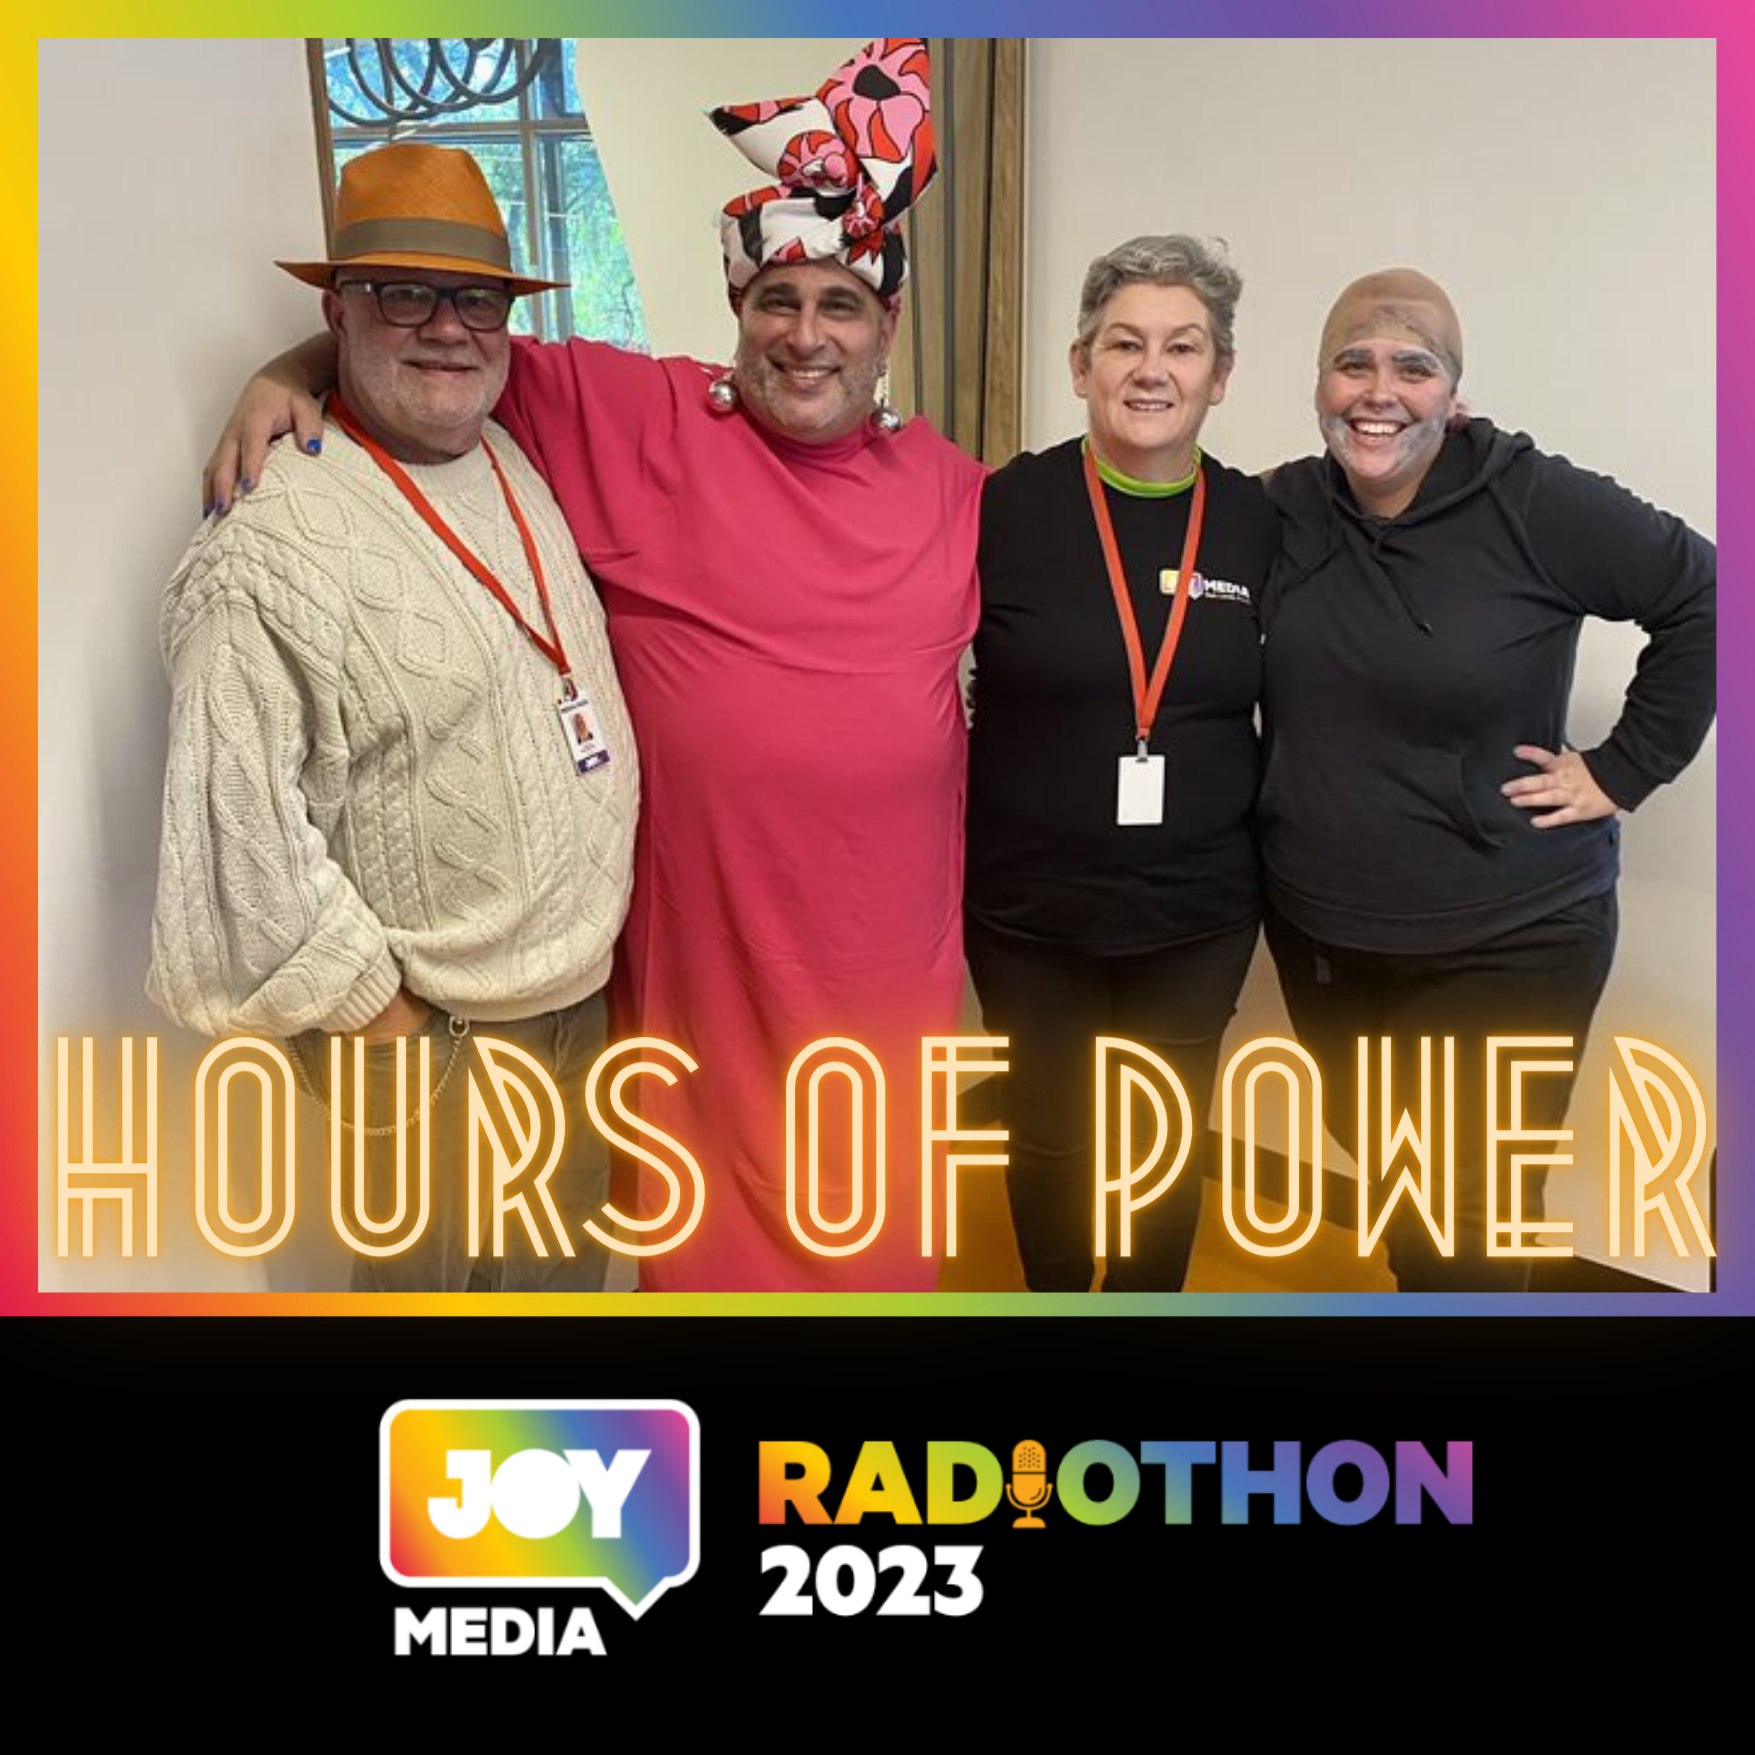 Hours of Power JOY Radiothon